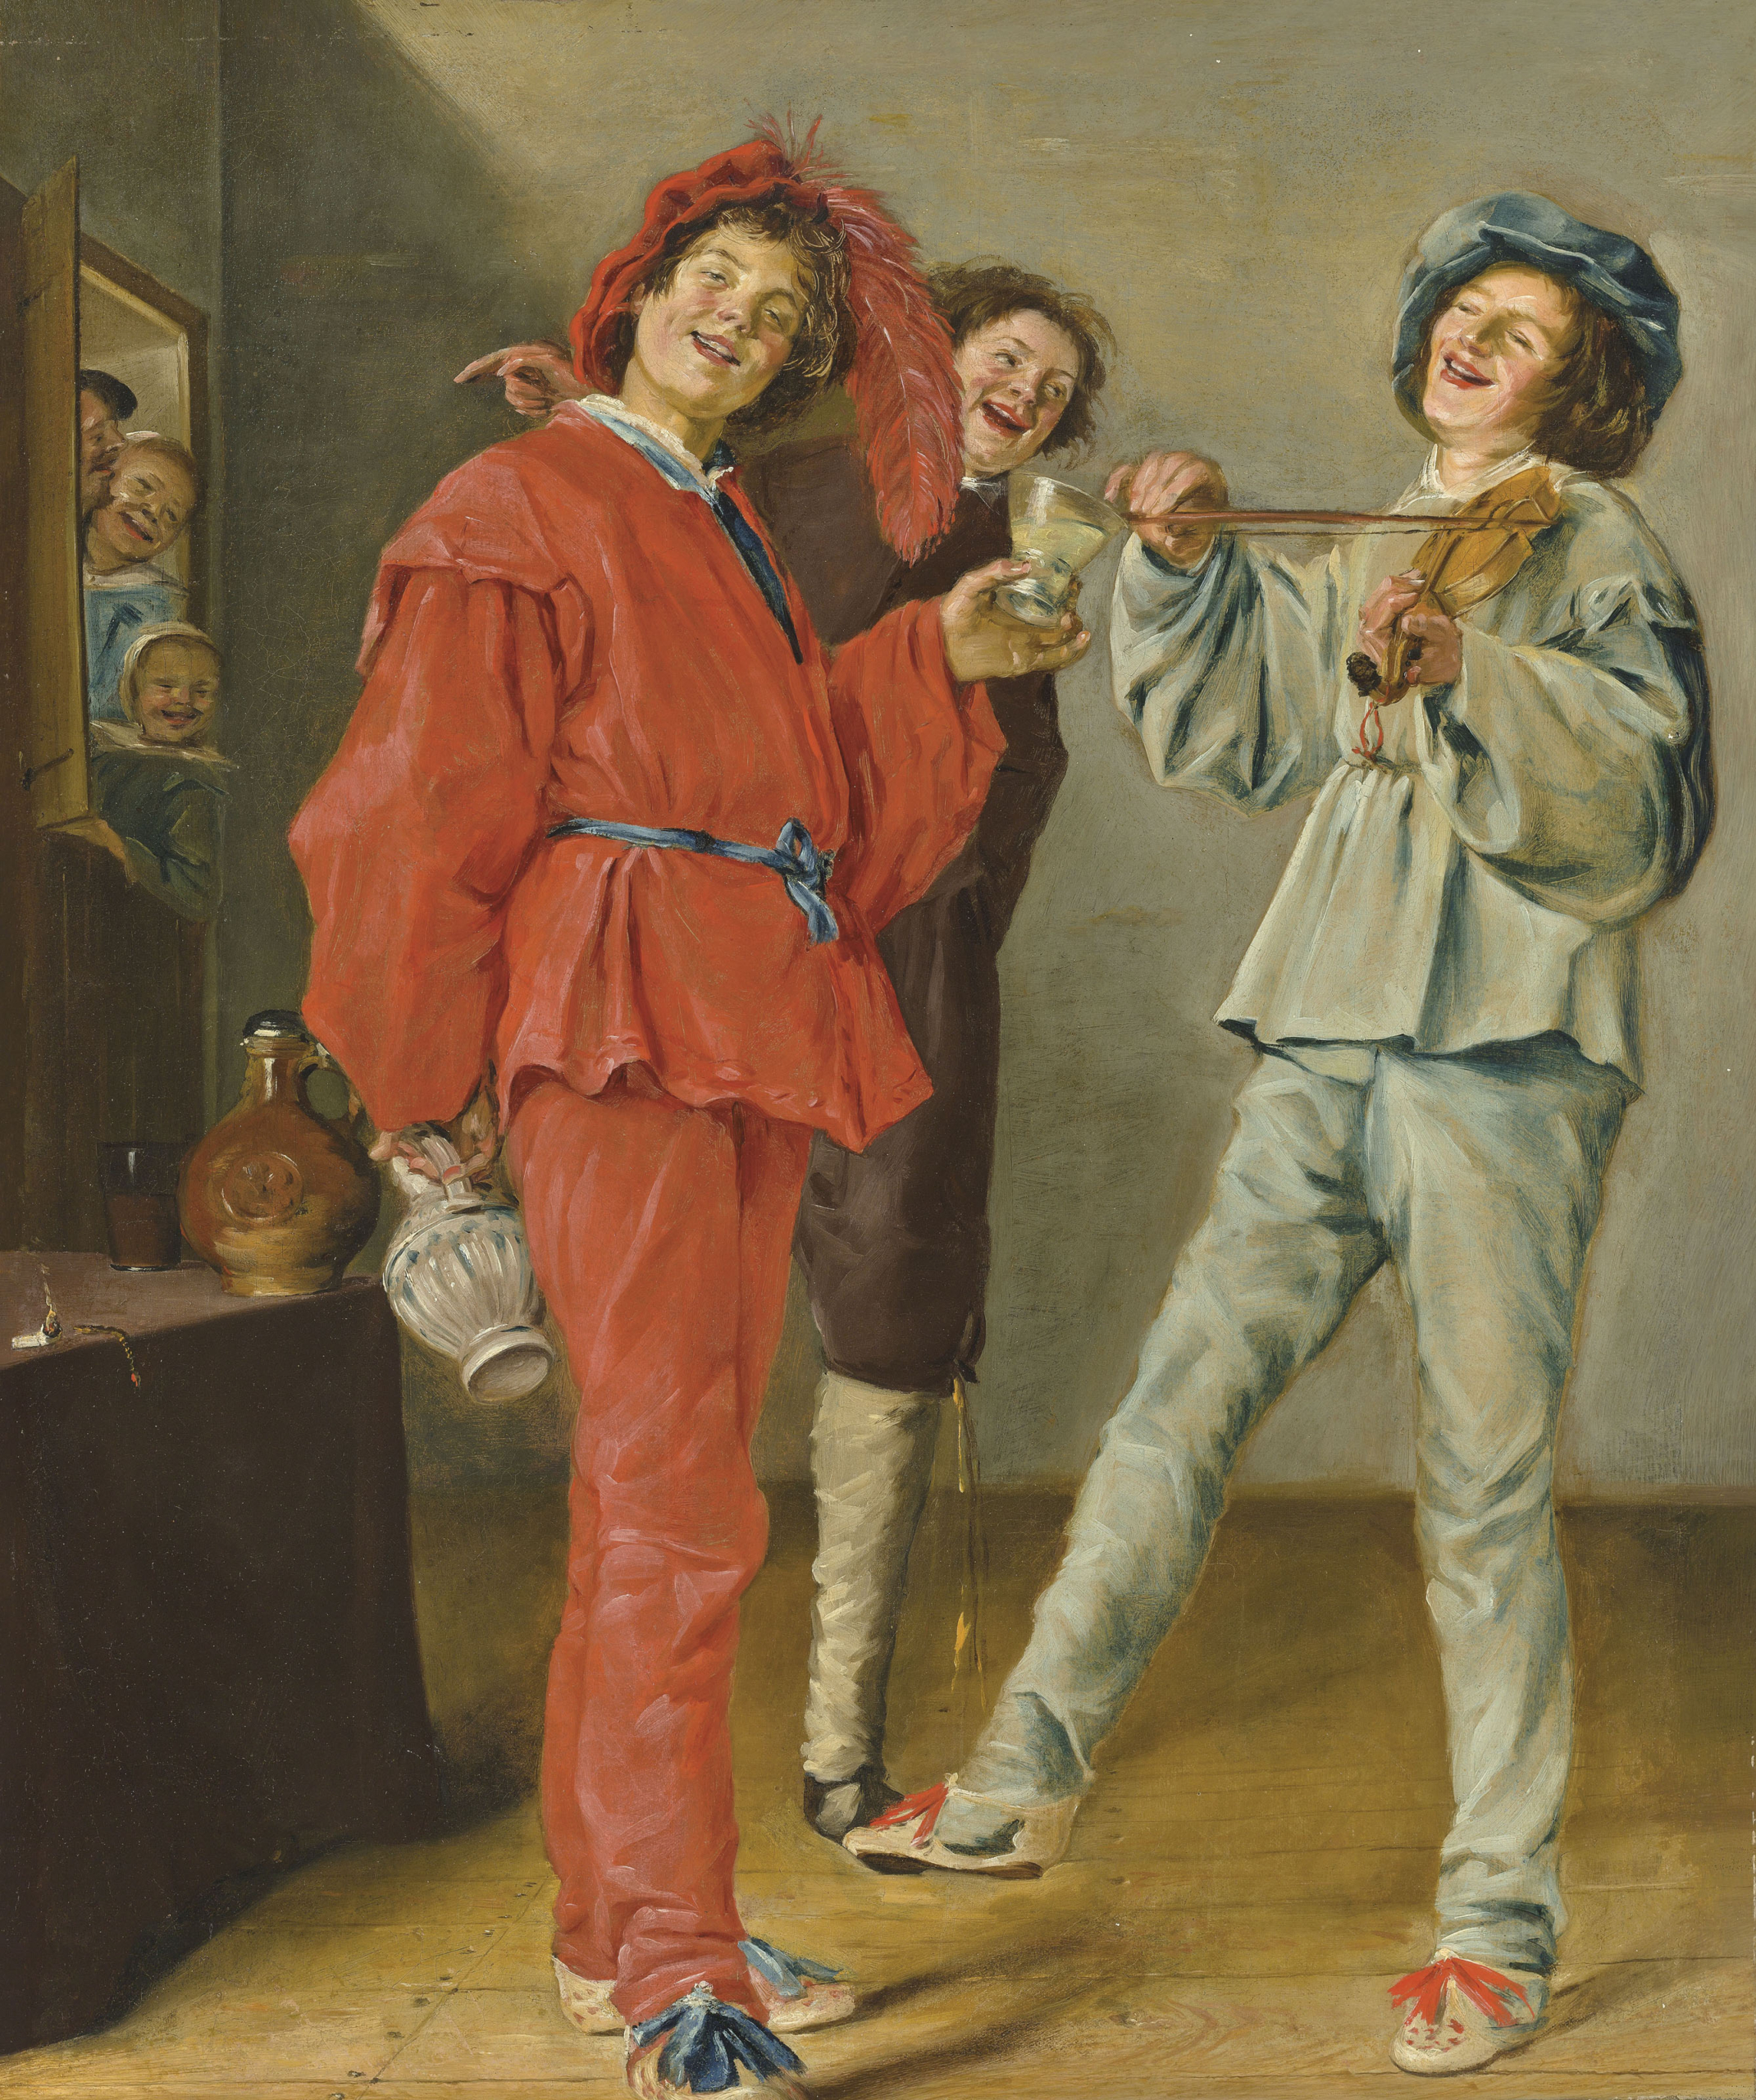 Tác phẩm “Merry Company” (Bữa Tiệc Vui Vẻ) (còn gọi là “Merry Trio” (Bộ Ba Vui Vẻ)), giữa 1629–1631, họa sỹ Judith Leyster. Sơn dầu trên vải canvas; 72 cm x 59.4 cm. Bộ sưu tập cá nhân. (Ảnh: Tư liệu công cộng)